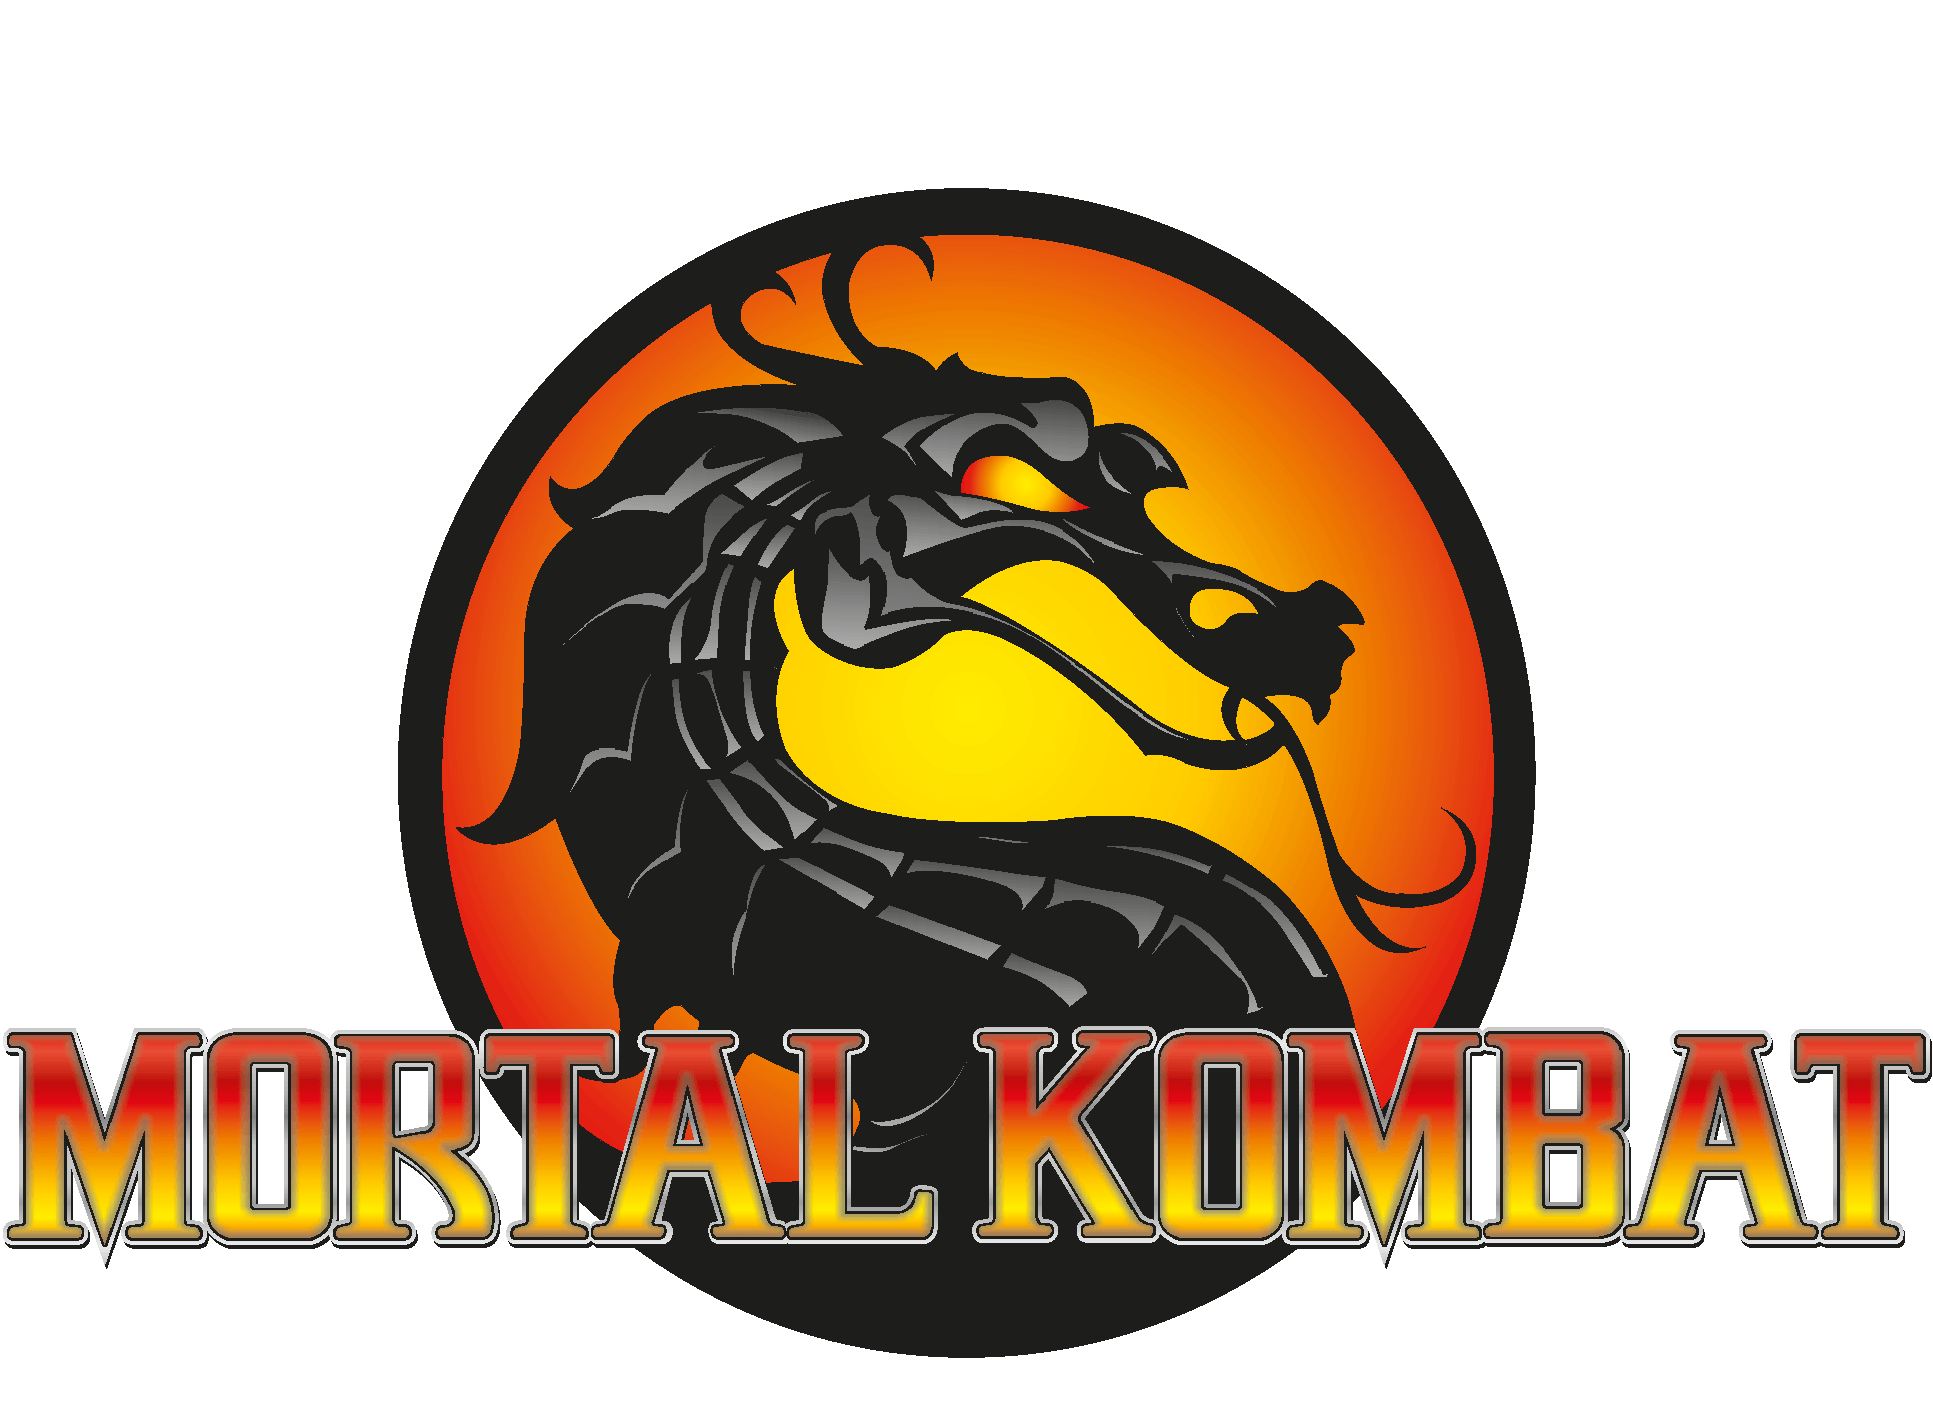 Mortal Kombat Logo - Mortal Kombat PNG images free download